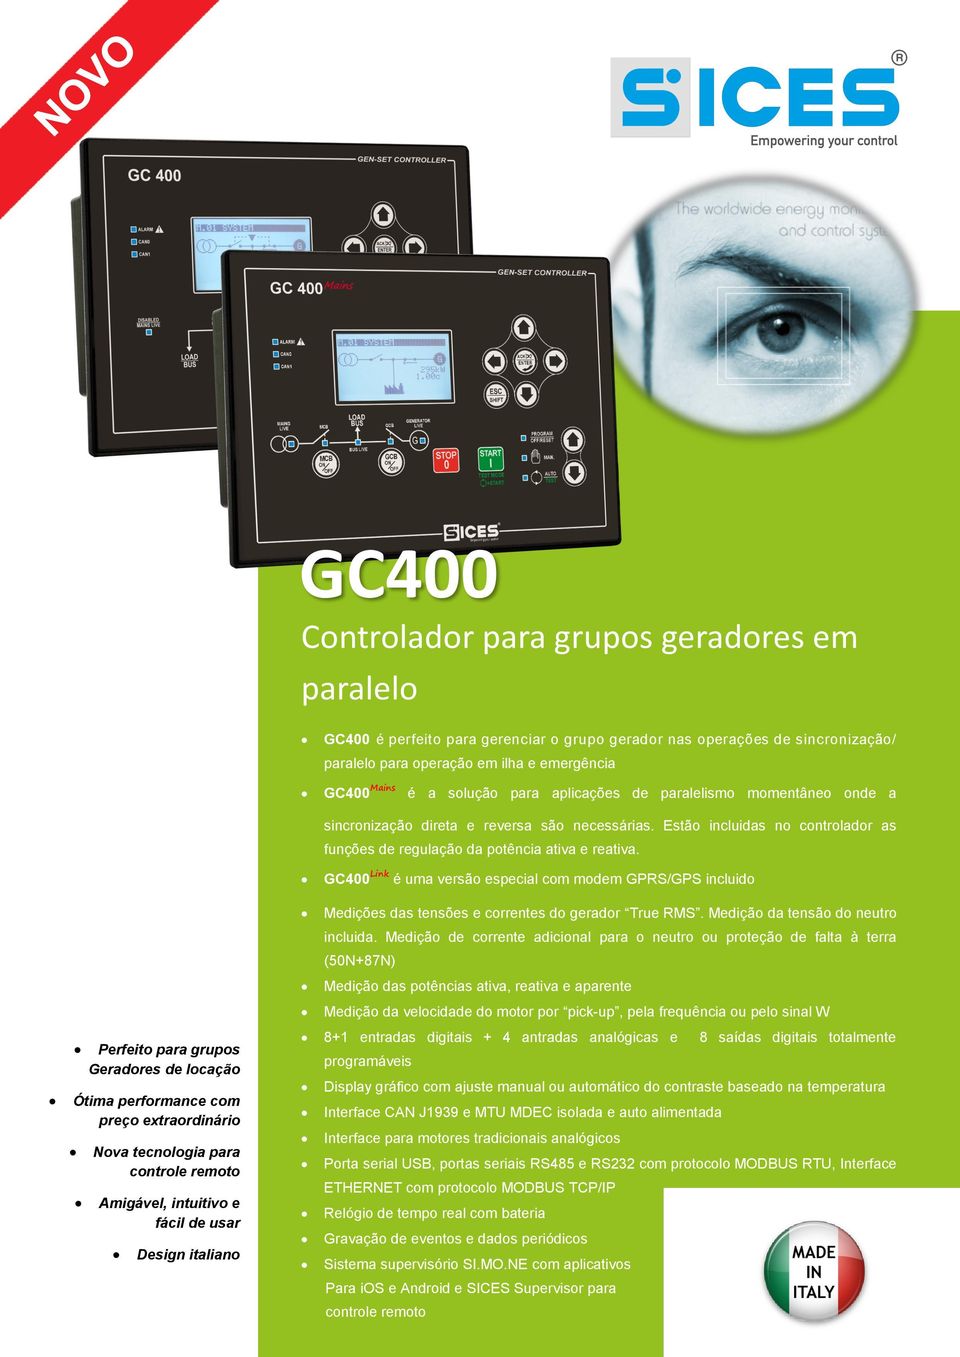 GC400Link é uma versão especial com modem GPRS/GPS incluido Medições das tensões e correntes do gerador True RMS. Medição da tensão do neutro incluida.